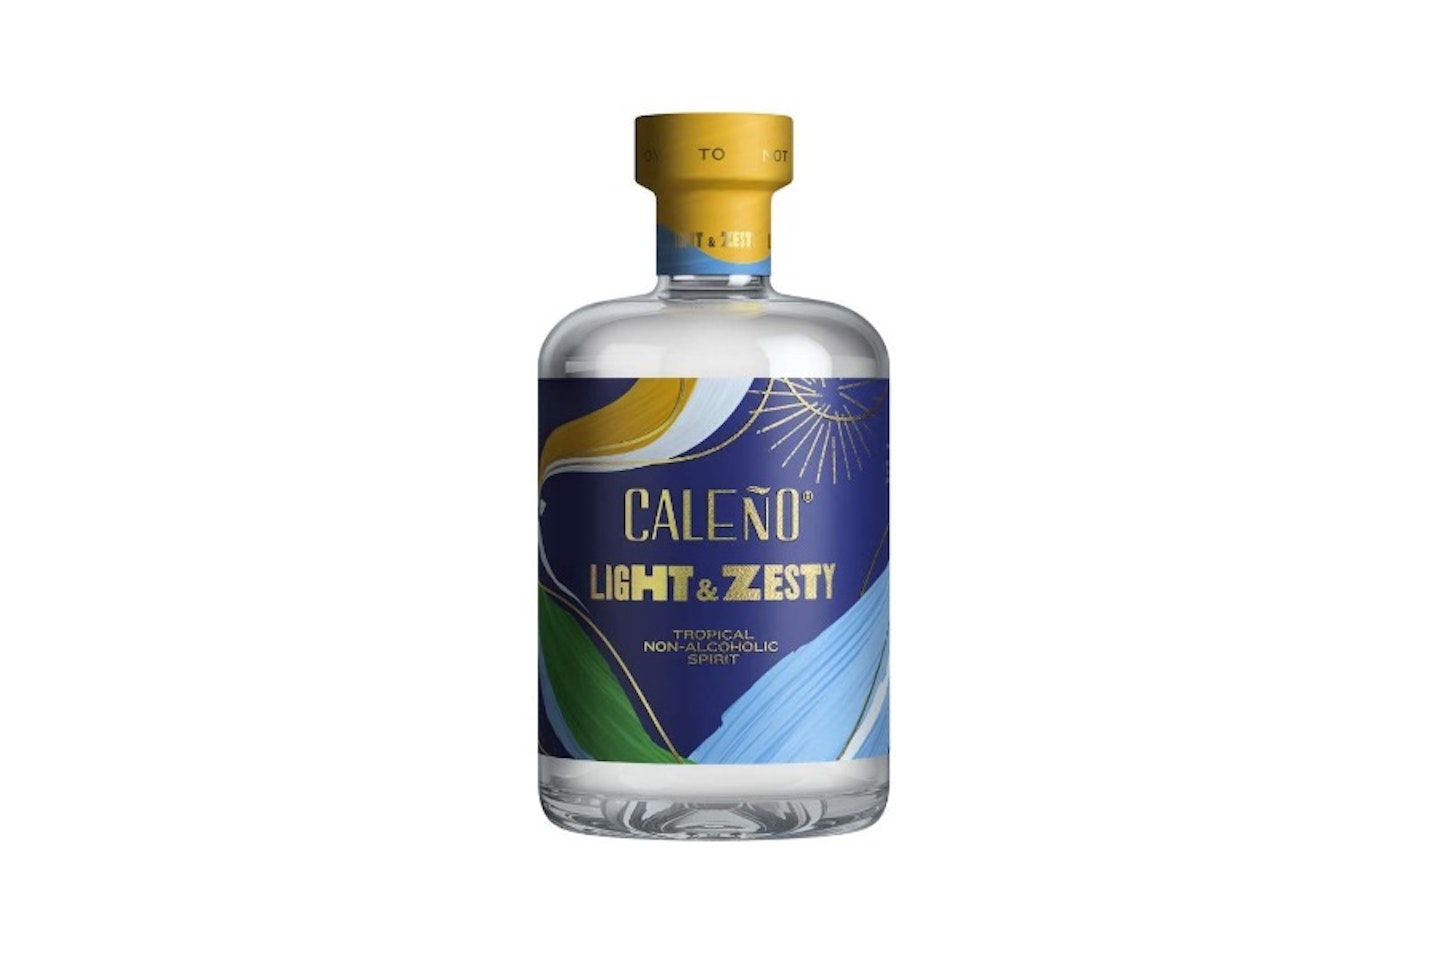 Caleu00f1o Non-Alcoholic Drinks (Light and Zesty, 50cl)